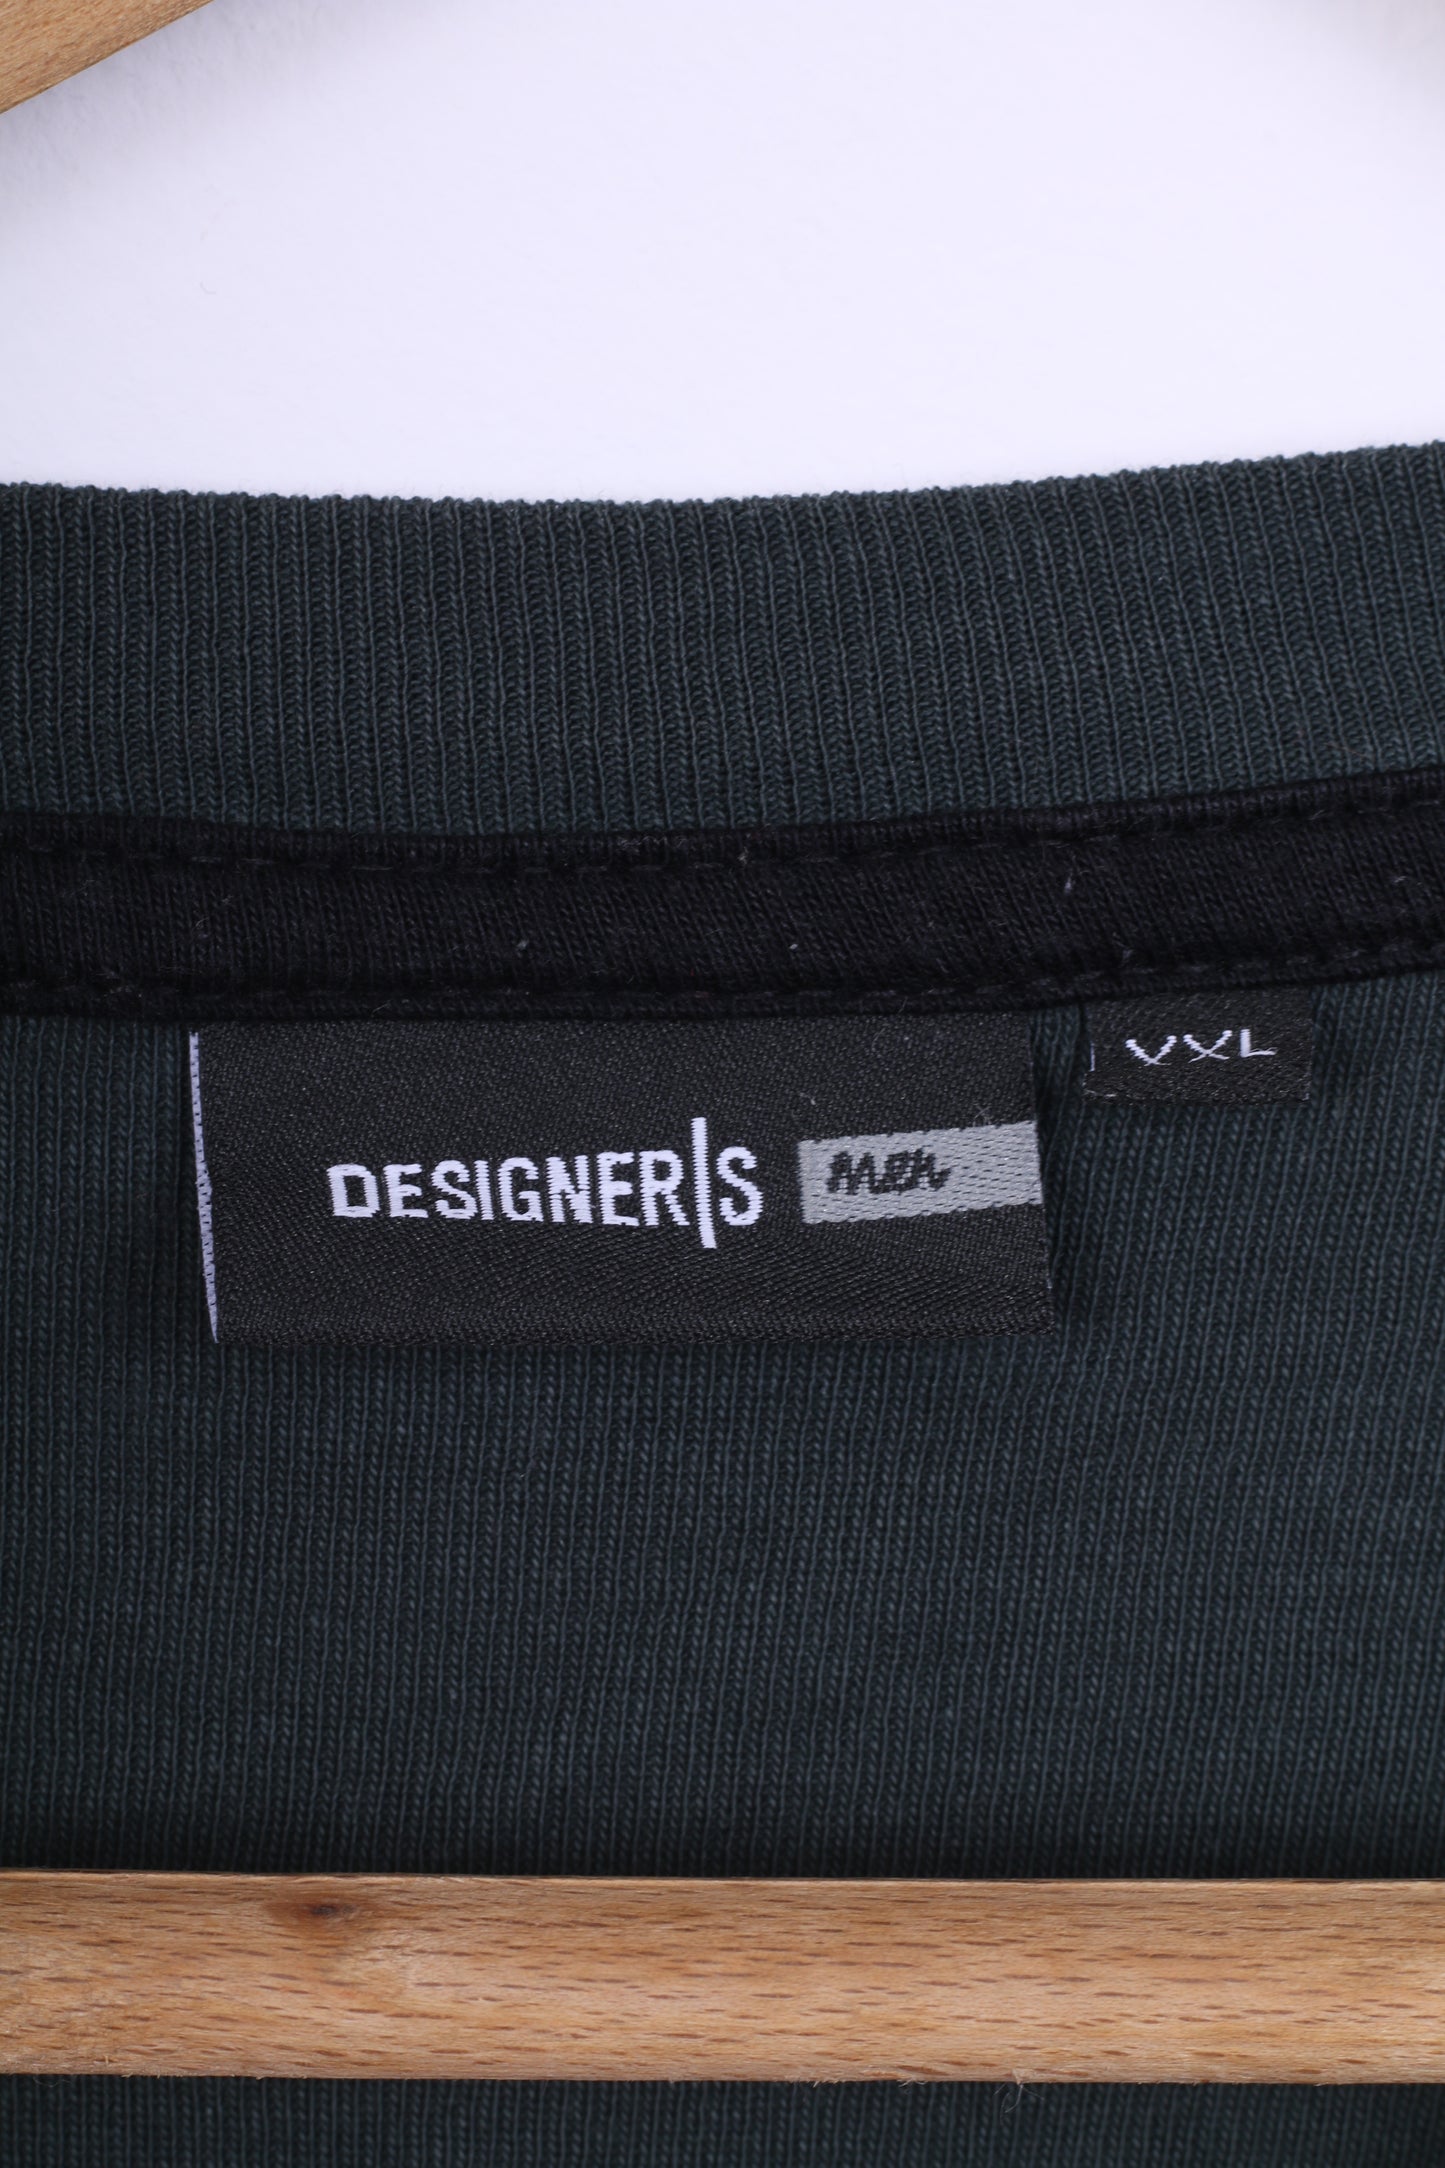 Designers Men Mens XXL T-Shirt Green Cotton Long Sleeve Crew Neck